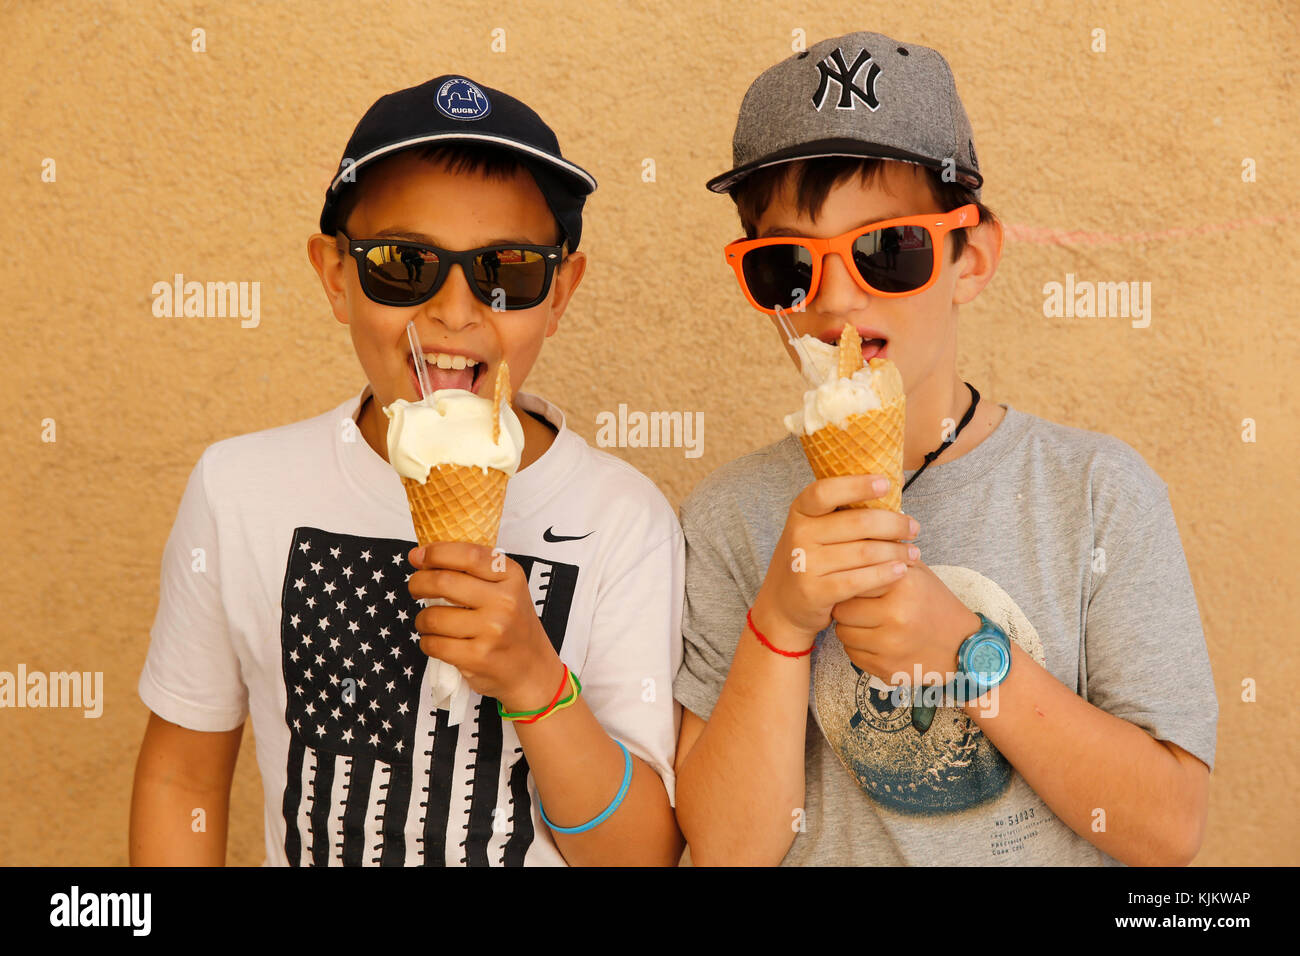 10-year-old boys de manger des glaces. Marseille. La France. Banque D'Images